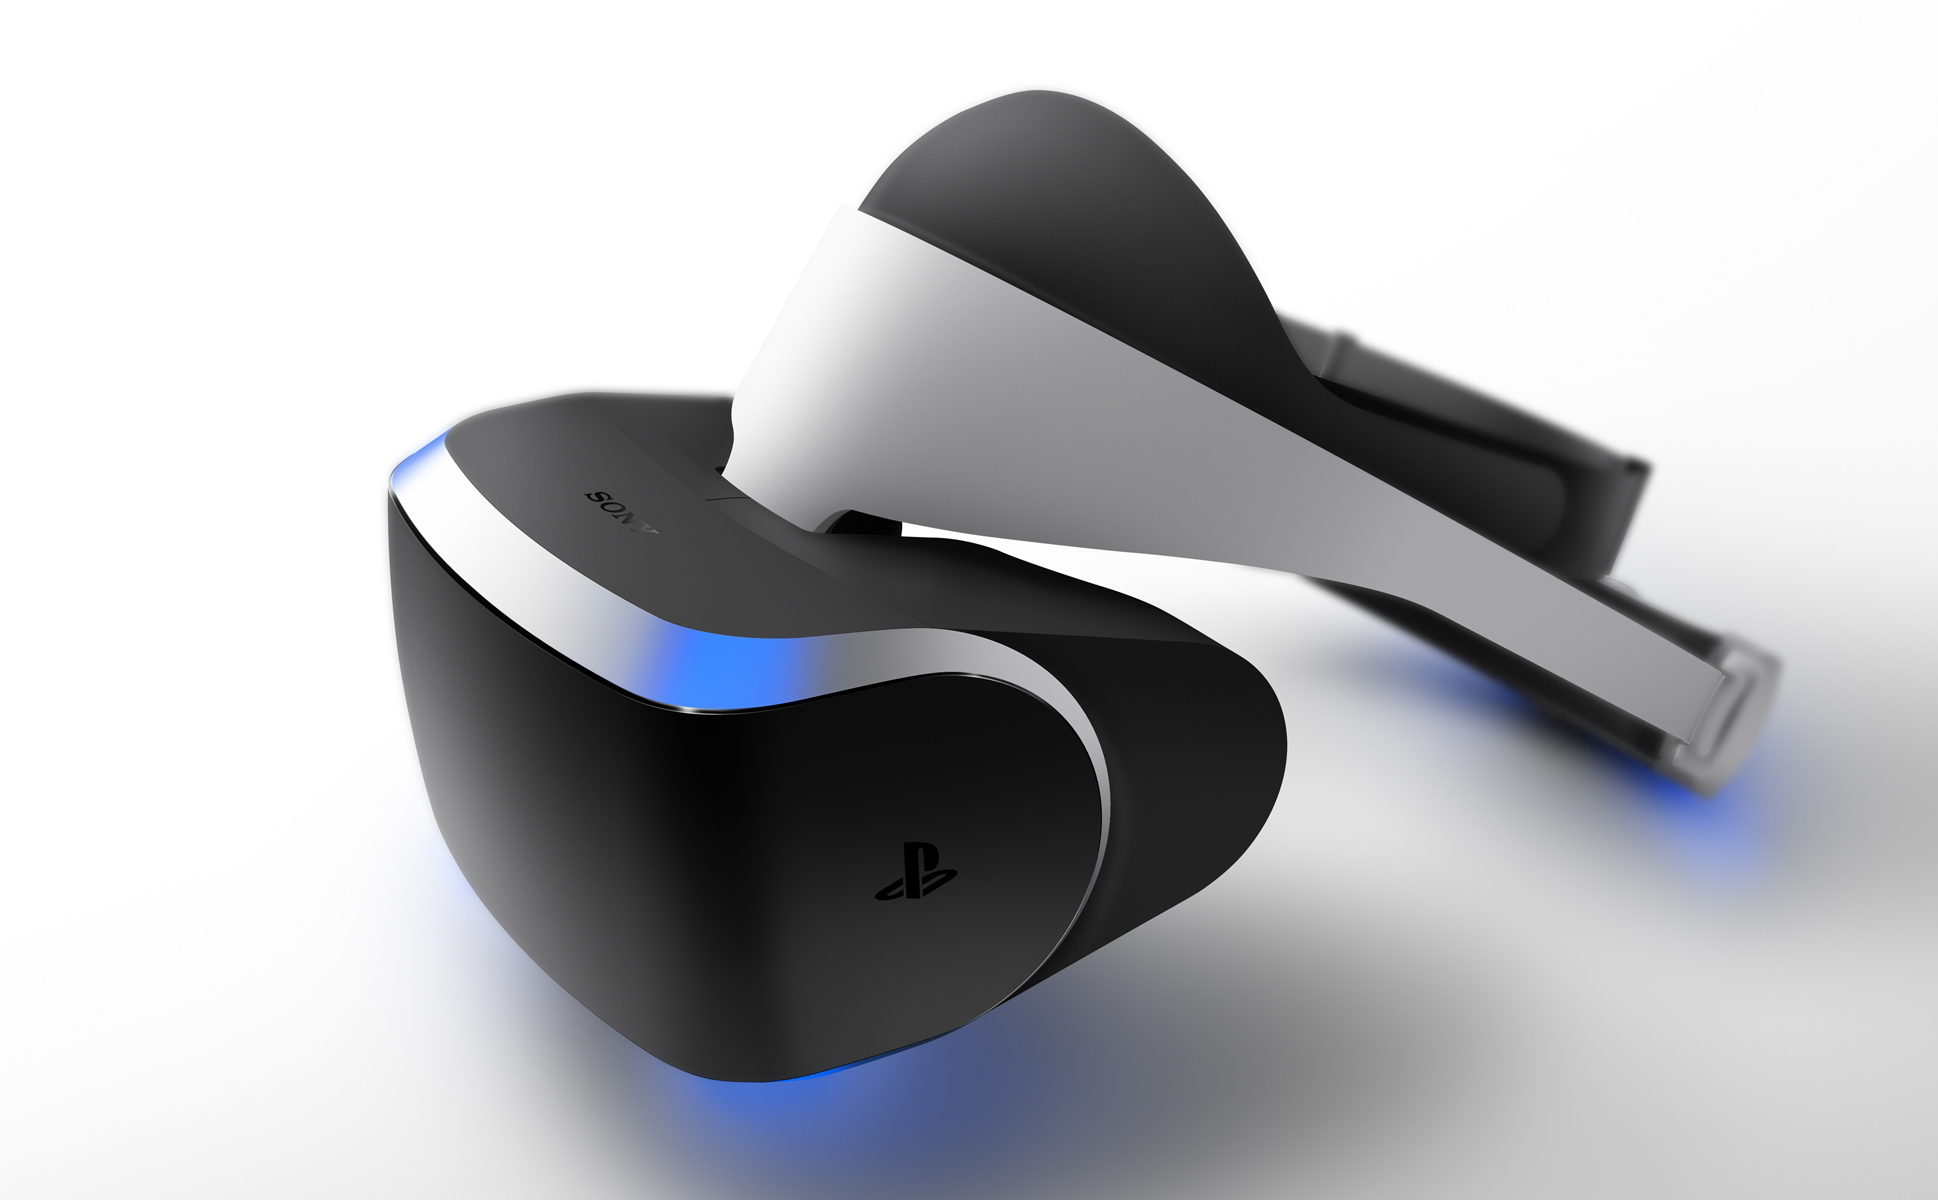 Comprar Gafas de realidad virtual PsVr de PS4